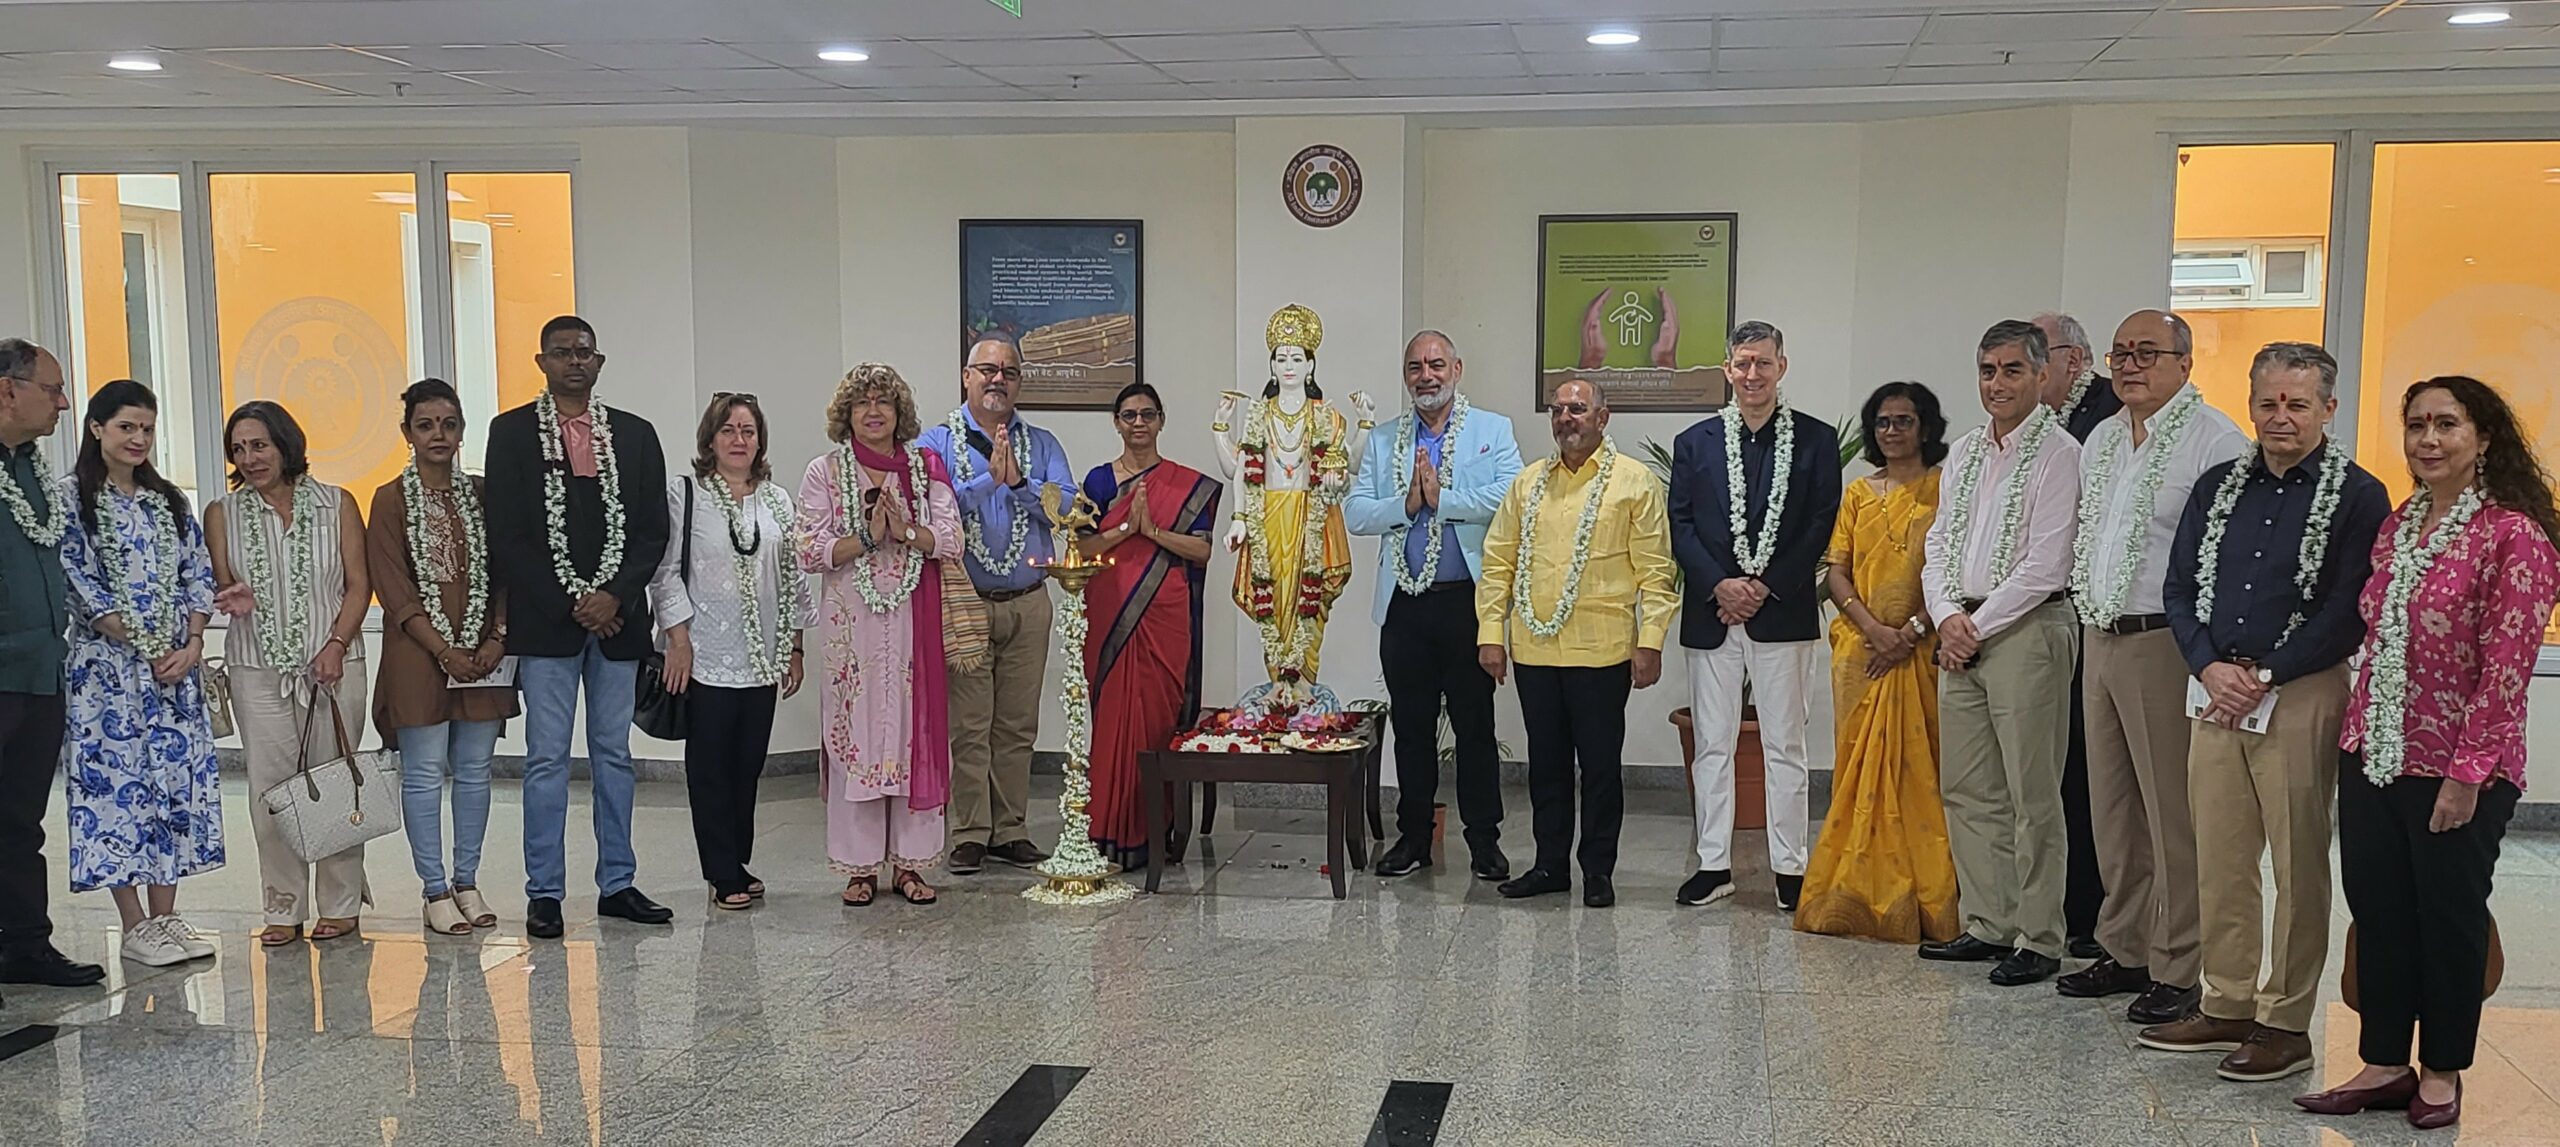 Embajadora venezolana participa en visita a Instituto de Ayurveda de la India